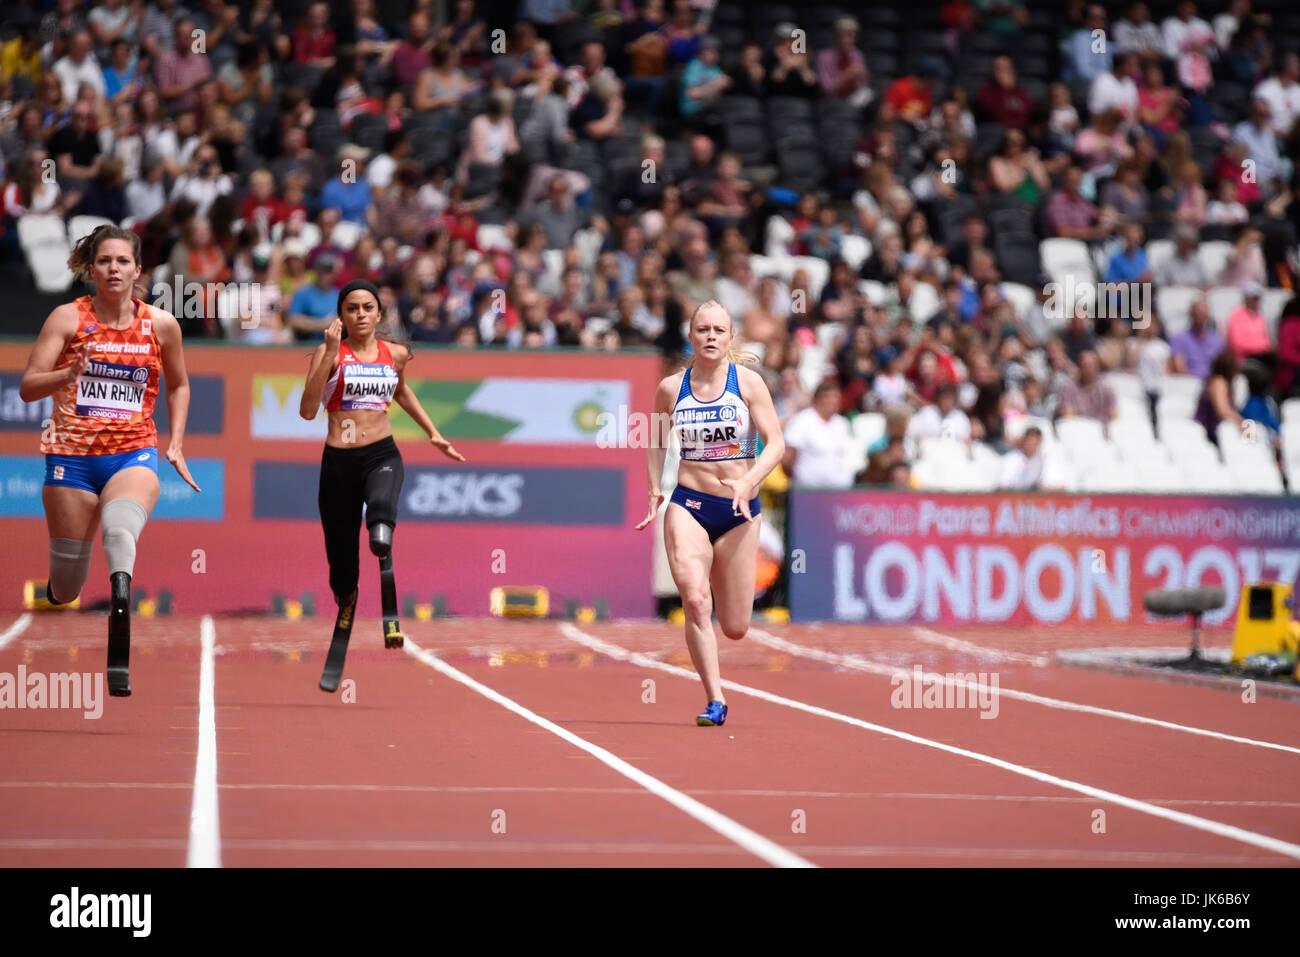 Laura Zucker fortgeschritten, um in die nächste Runde auf der Welt Para Leichtathletik WM London 2017 Stockfoto